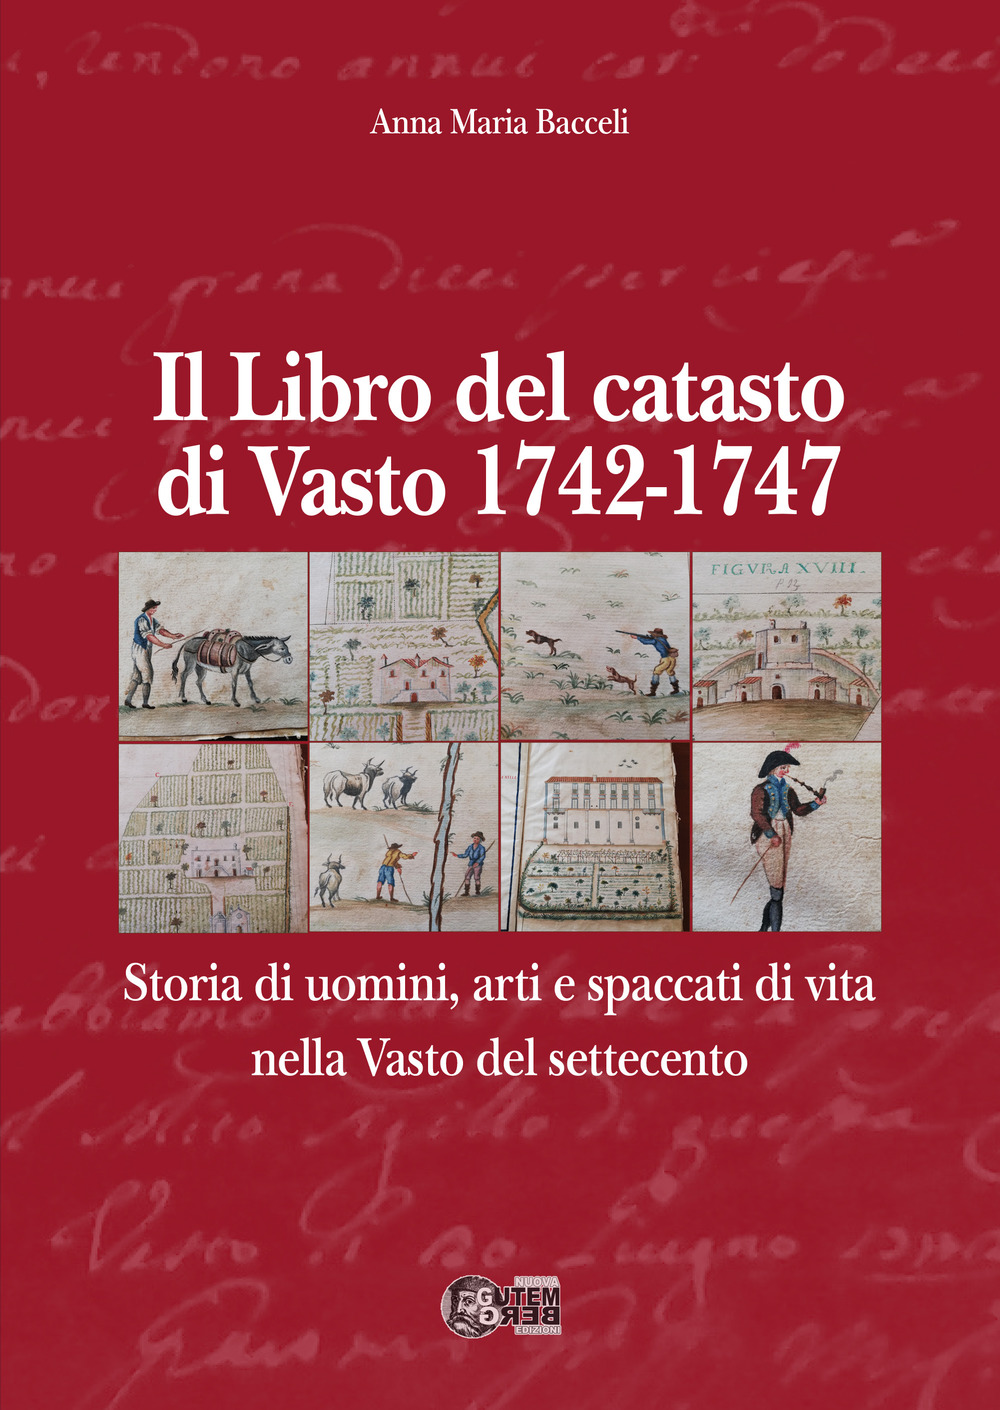 Il libro del Catasto di Vasto 1742-1747. Storia di uomini, arti e spaccati di vita nella Vasto del Settecento